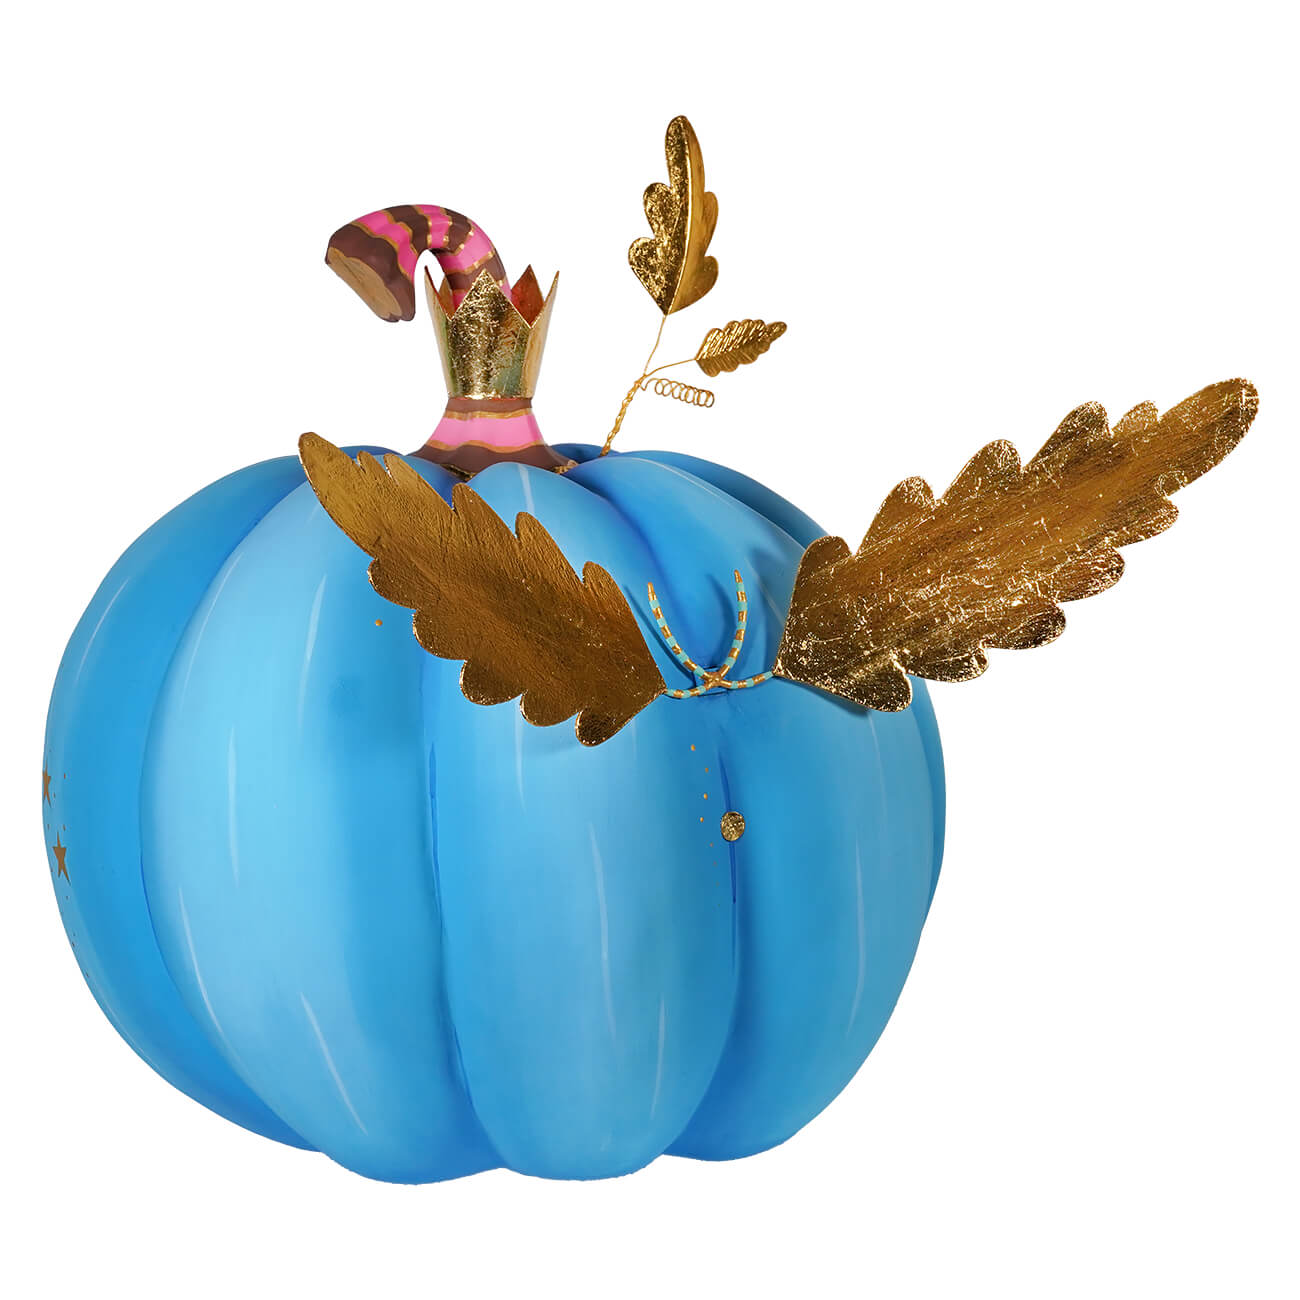 Hugourd Blue Pumpkin Pixie Display